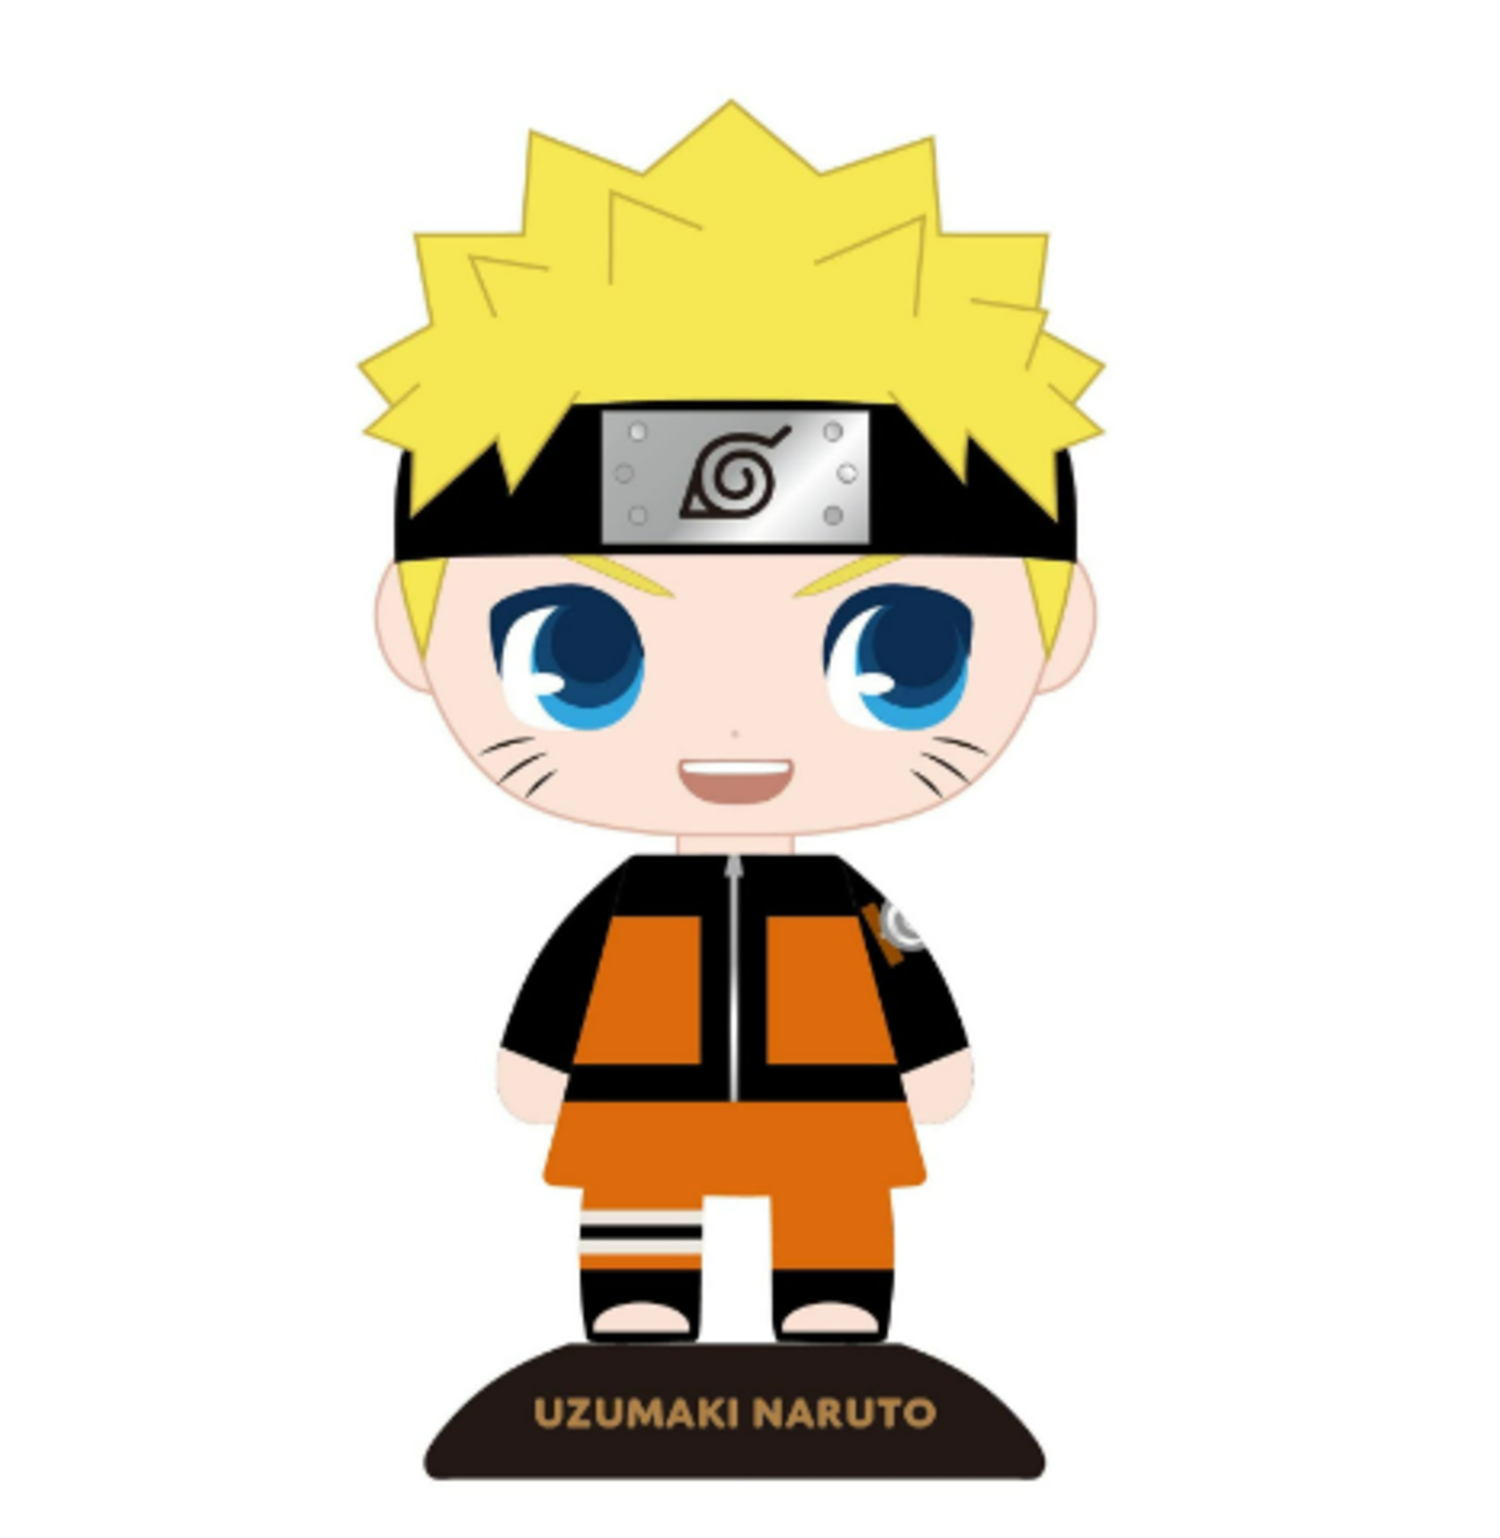 YuraYura Bobblehead Naruto là một sản phẩm tuyệt vời cho những người yêu thích Naruto. Hãy điều chỉnh và tùy chỉnh tạo hình này của bạn để tạo ra một tác phẩm đẹp mắt và đặc biệt.